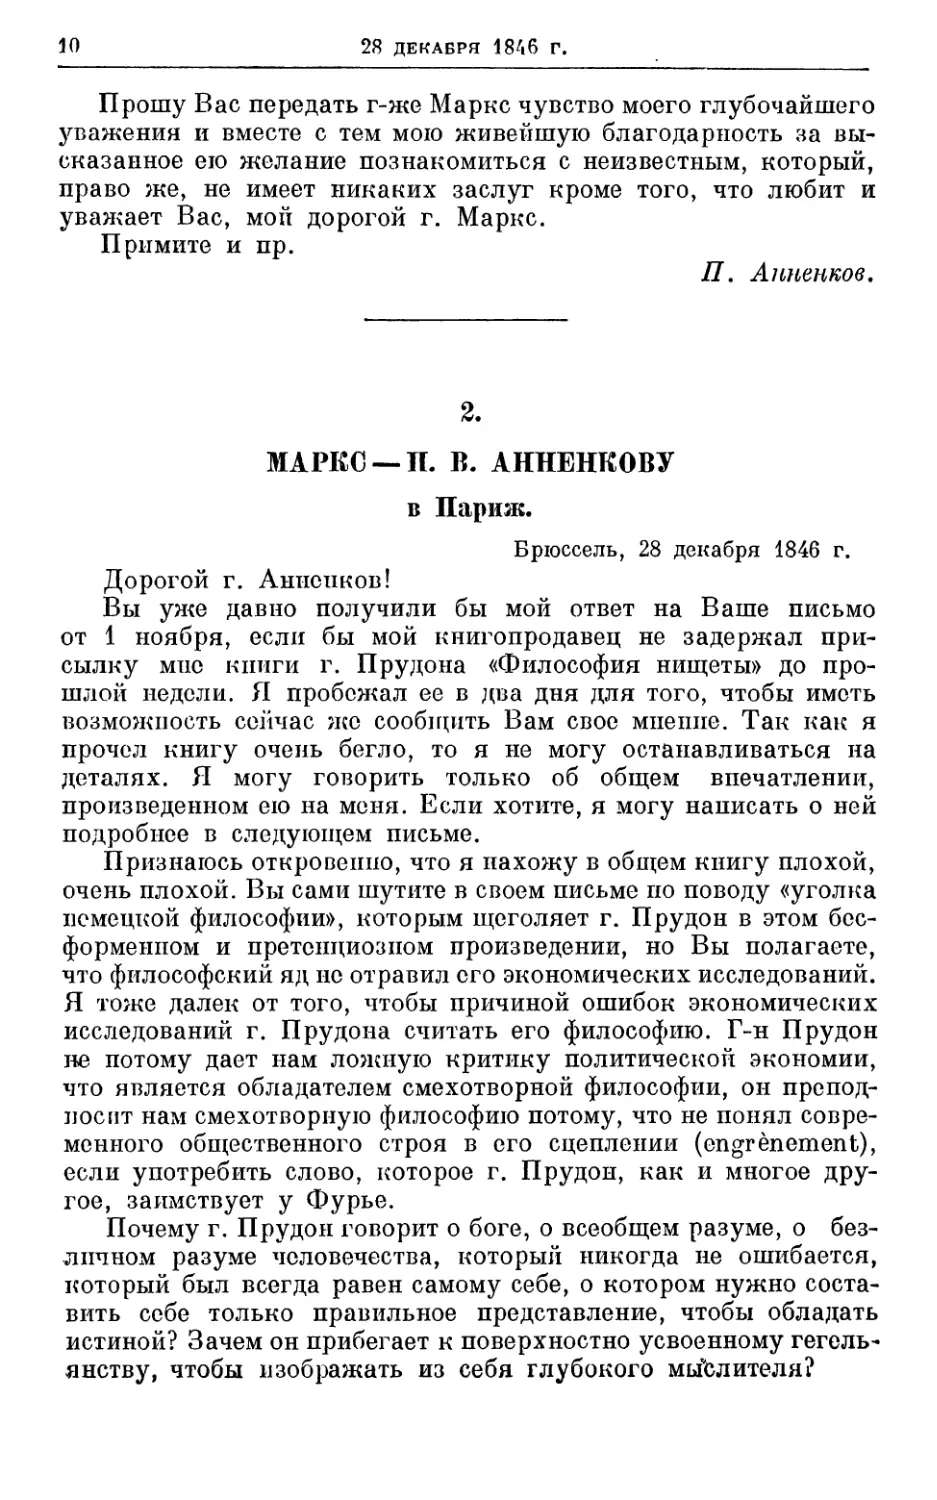 2. Маркс — П. В. Анненкову, 28 декабря 1846г